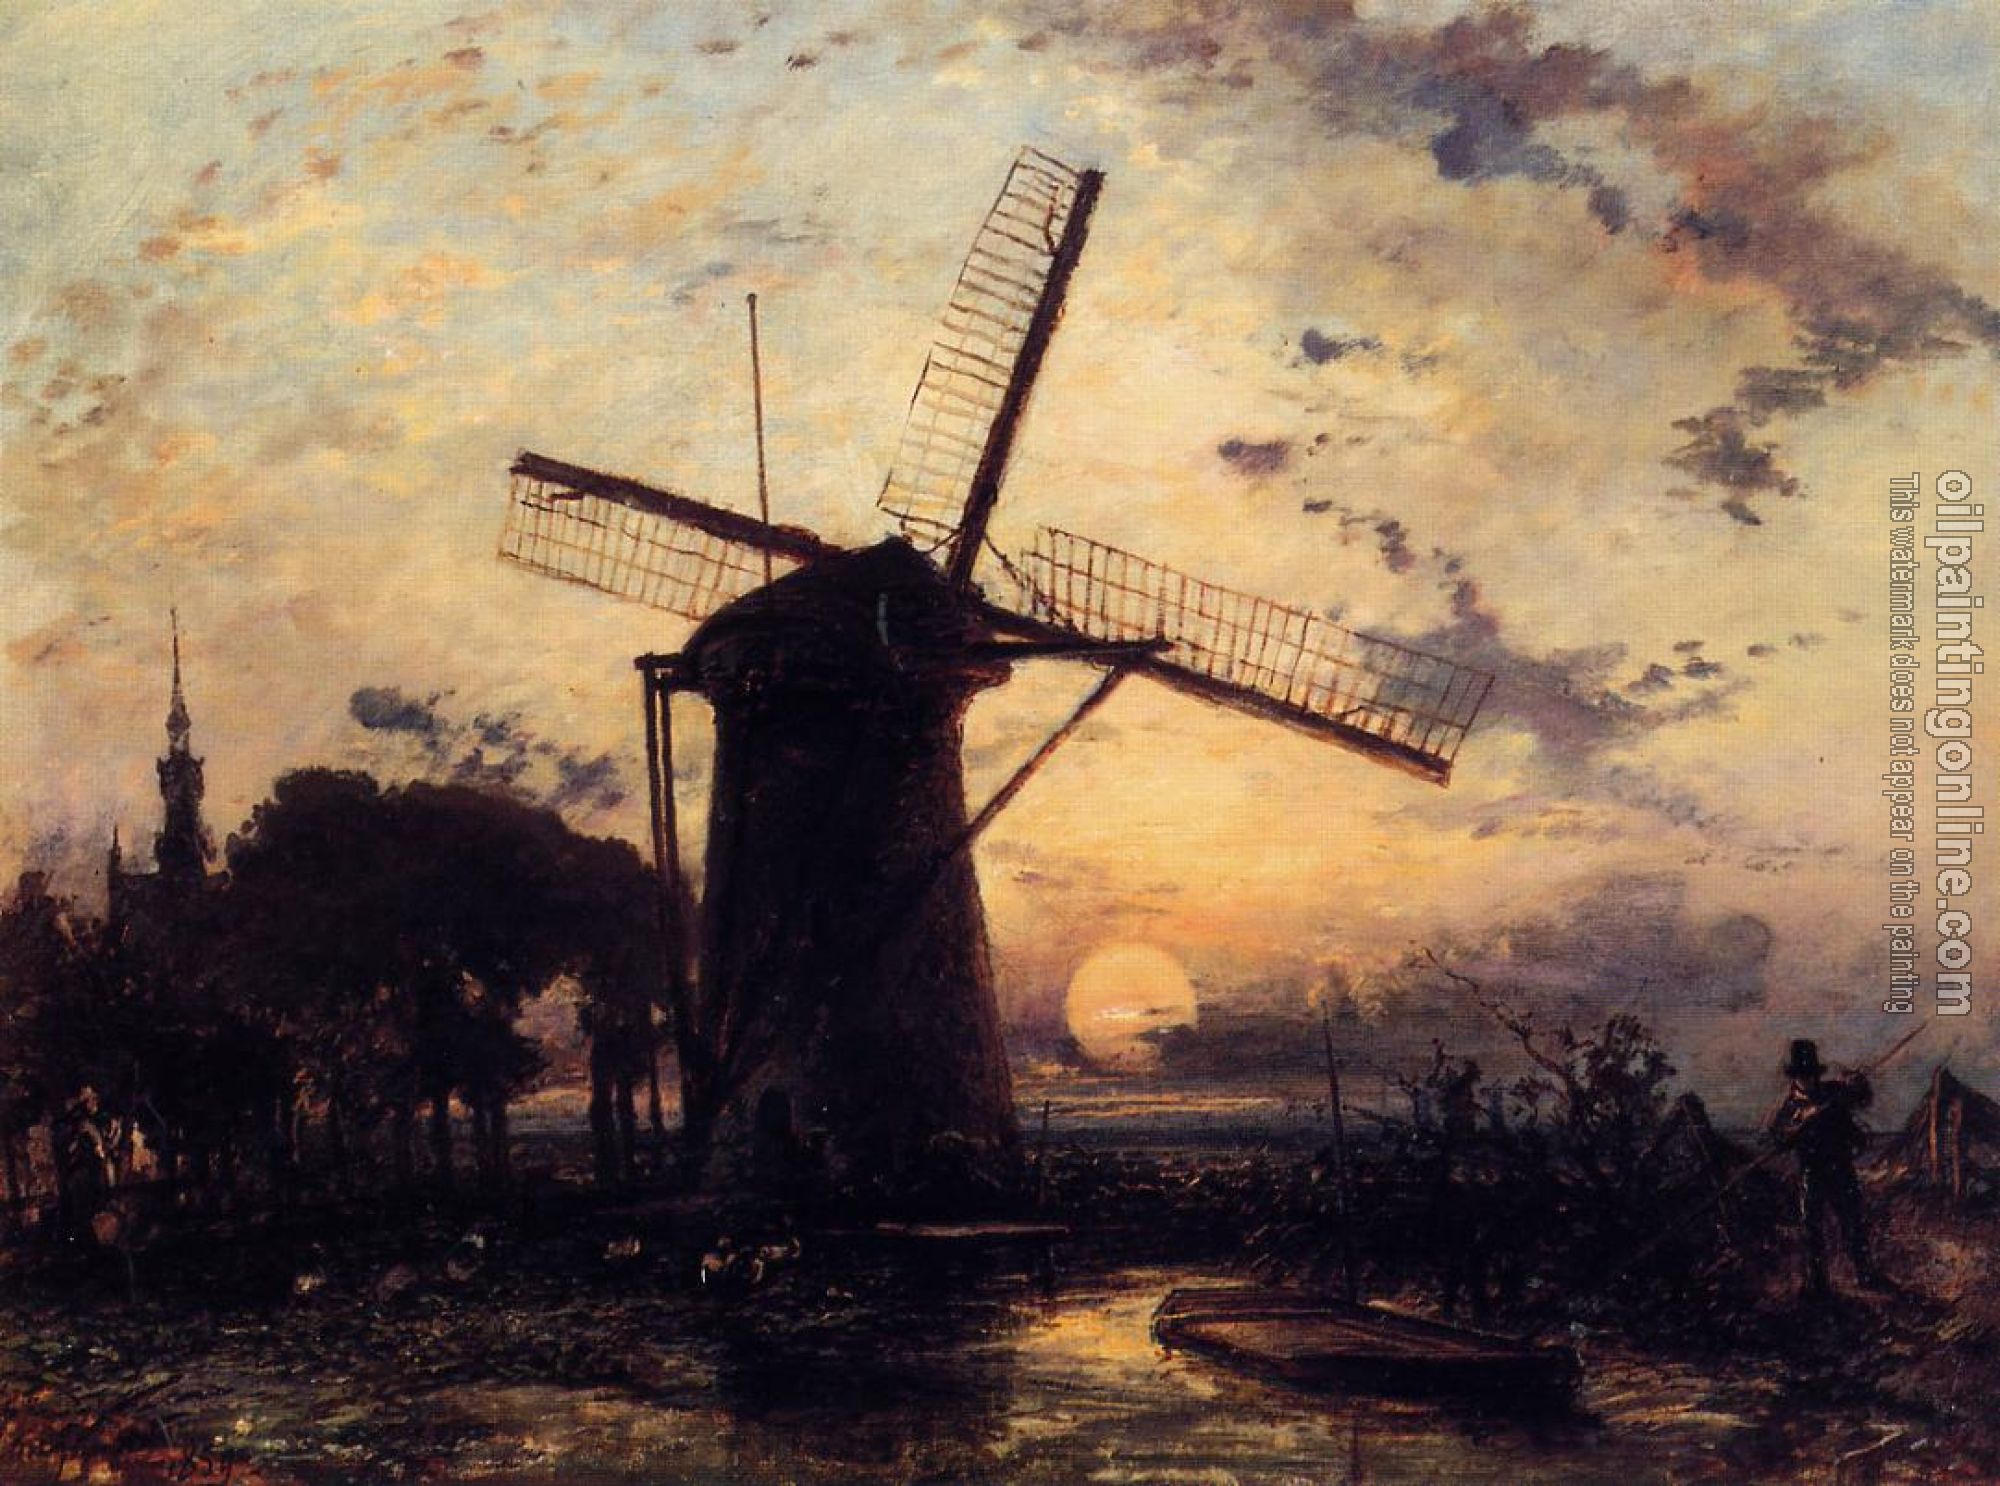 Johan Barthold Jongkind - Boatman by a Windmill at Sundown